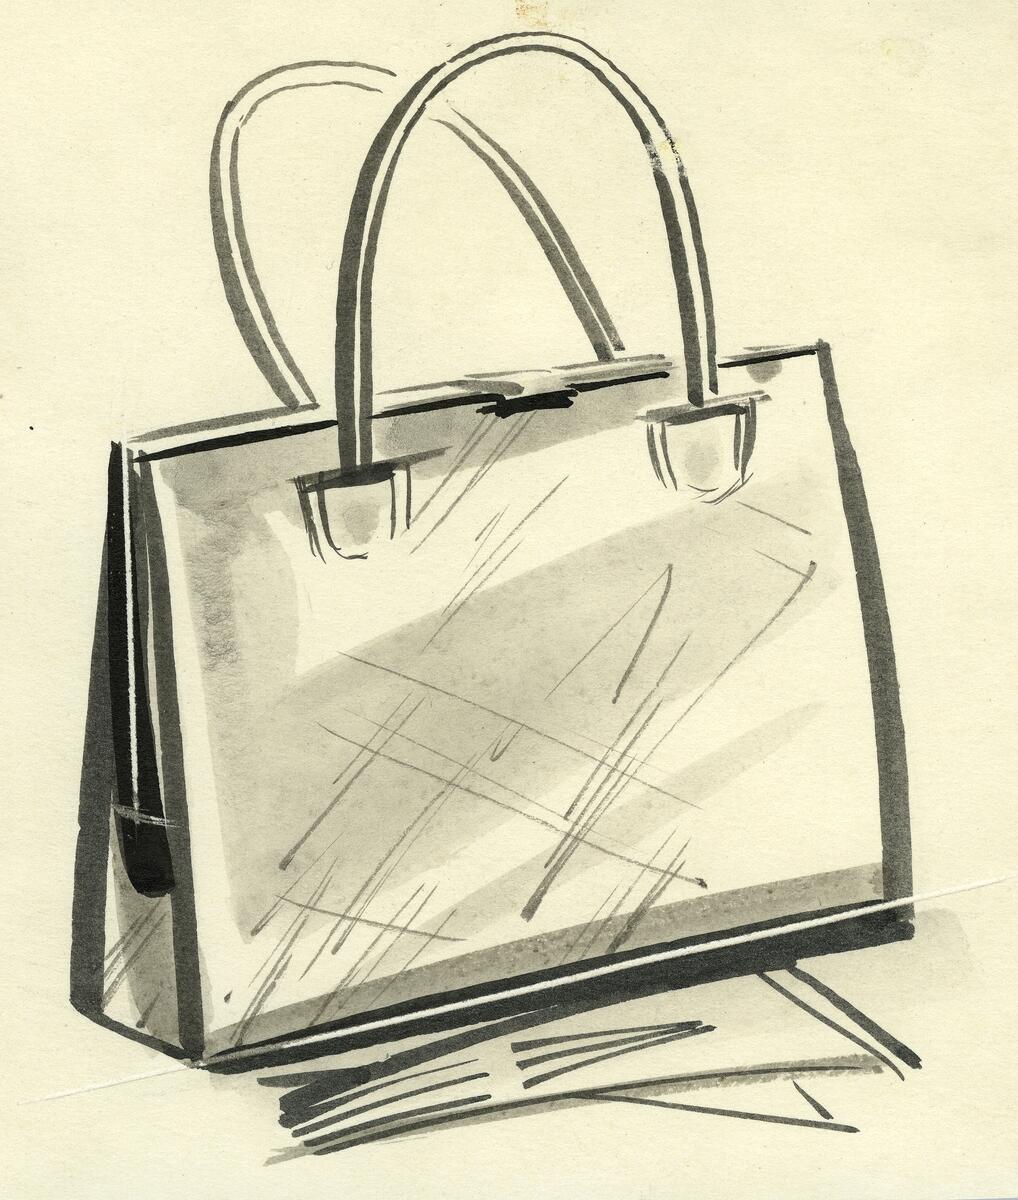 Skissen visar en kvadratisk väska med dubbla handtag samt ett par handskar.